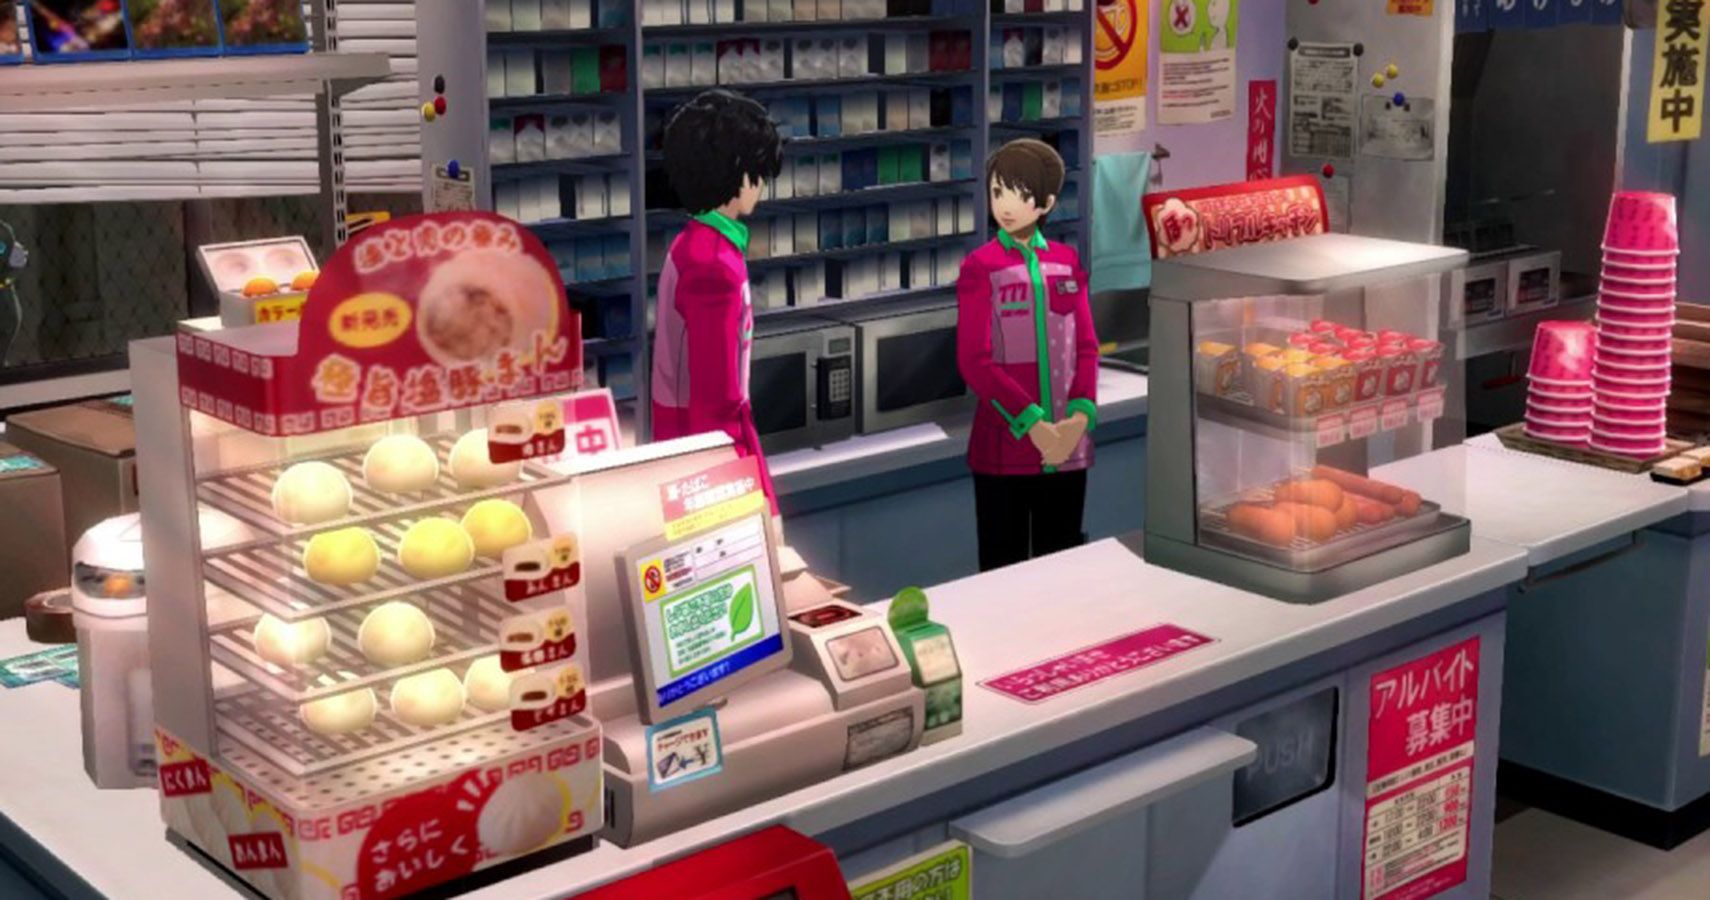 Persona 5 Convenience Store